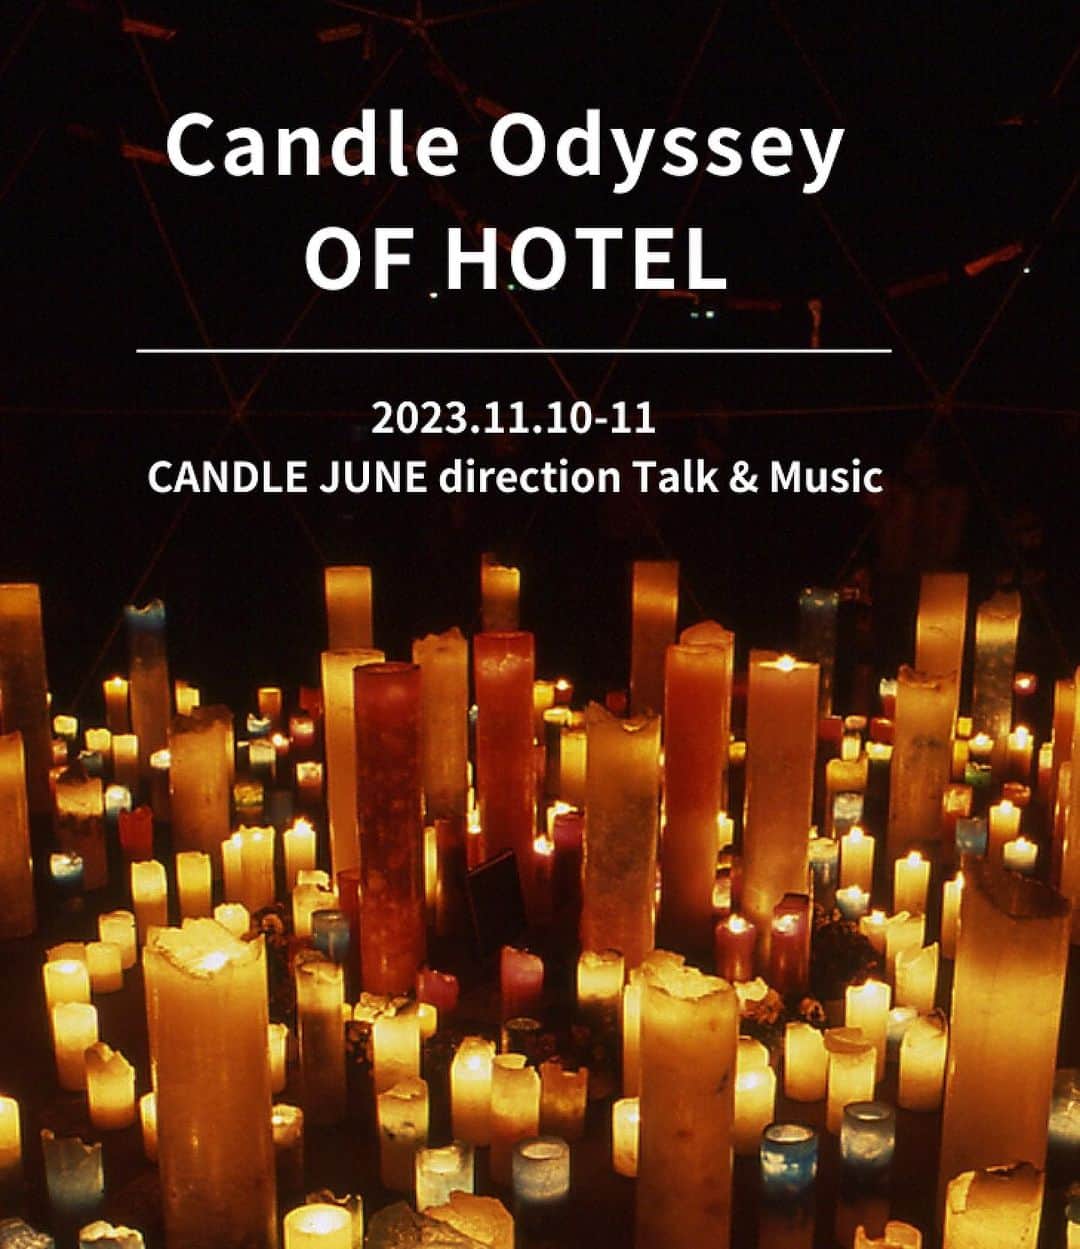 CANDLE JUNEのインスタグラム：「仙台でイベントします。よかったらぜひ！  #Repost @of_hotel with @use.repost ・・・ 【Candle Odyssey OF HOTEL｜CANDLE JUNE direction Talk & Music】  OF HOTELにて、キャンドルアーティスト CANDLE JUNE ディレクションのイベントを開催いたします。 11月10日（金）、11日（土）の2日間、OF HOTELのエントランスがキャンドルの光で彩られます。 また、CANDLE JUNEによるトークや、ゲストアーティストの音楽ライブもお楽しみいただけます。 冬の仙台で、心が温かくなるひとときを感じでいただけたら幸いです。  ◎1日目のイベント内容  2023年11月10日（金） 17:00-24:00 CANDLE JUNE エキシビション 場所：OF HOTEL 1階エントランス  17:00-23:00 キャンドル販売、BARイベント 場所：OF HOTEL 2階カフェ&ラウンジ ※お食事やドリンクの販売を予定しておりますが、数に限りがございますので、なくなり次第提供終了となります ※お支払いは当日、現金での支払いのみとなります  18:30-21:00 CANDLE JUNE トークイベント、音楽ライブ  出演：谷本賢一郎、Hanah Spring 場所：OF HOTEL 2階カフェ&ラウンジ ※申し込み制となります  ◎2日目のイベント内容 2023年11月11日（土） 17:00-24:00 CANDLE JUNE エキシビション 場所：OF HOTEL 1階エントランス  17:00-23:00 キャンドル販売 場所：OF HOTEL 2階カフェ&ラウンジ ※CANDLE JUNE氏が在廊の予定です ※お支払いは当日、現金での支払いのみとなります  ◎料金 入場料：無料  ◎お申し込み トーク&音楽ライブに関しては、Peatixよりお申し込みください。（定員：先着15名） https://peatix.com/event/3723100/view  ◎主催・お問い合わせ OF HOTEL（オブホテル） TEL：022-748-5772 フォーム：https://of-hotel.com/contact/  ◎詳しくは、OF HOTEL公式サイトをご覧ください https://of-hotel.com/event/candle-odyssey-2023/  @eldnacs_inc @taniken_k.tanimoto @hanah_spring   #ofhotel #hotel #hotelstay #miyagi #sendai #japanese #オブホテル #仙台 #宮城 #仙台ホテル #ライフスタイルホテル #仙台旅行 #仙台観光 #仙台おでかけ #candlejune #谷本賢一郎 #hanahspring  #candleodyssey #eldnacs #candles #キャンドルナイト」